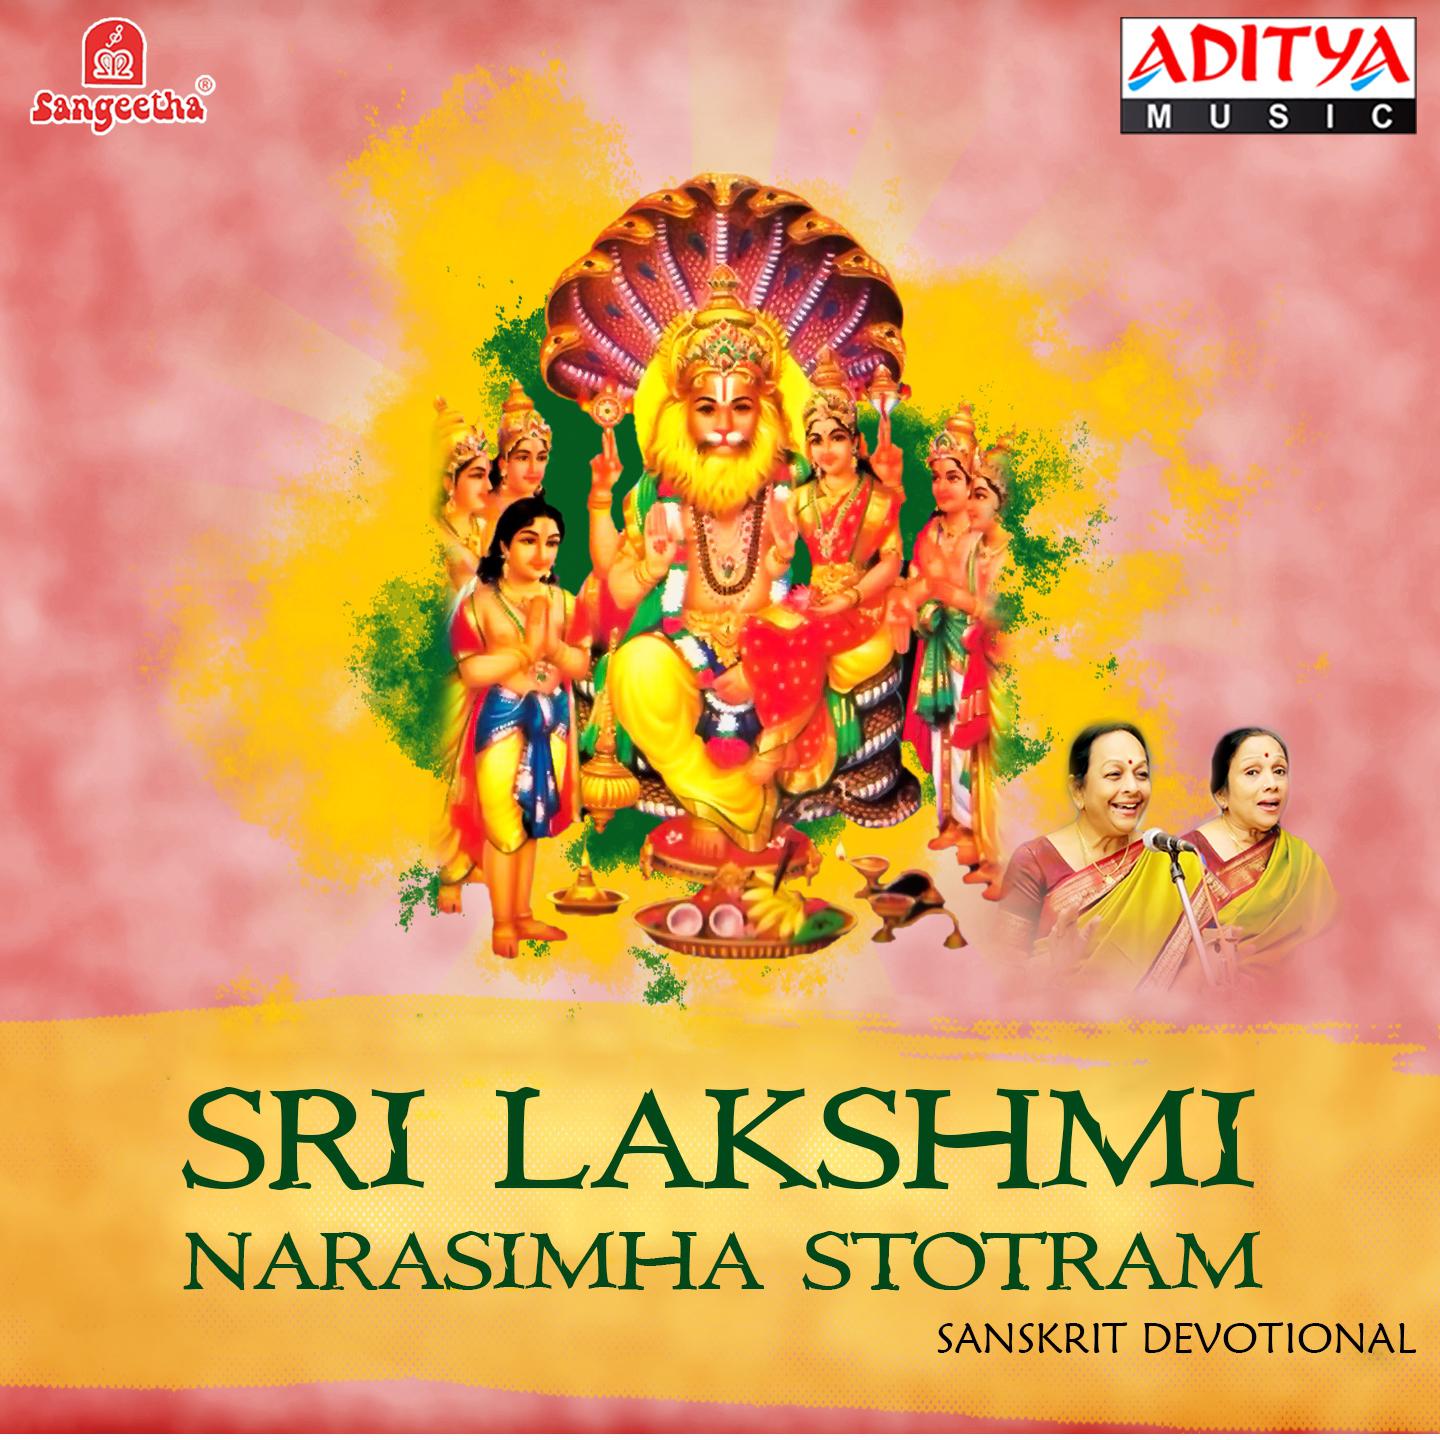 Sri Lakshmi Narasimha Stotram